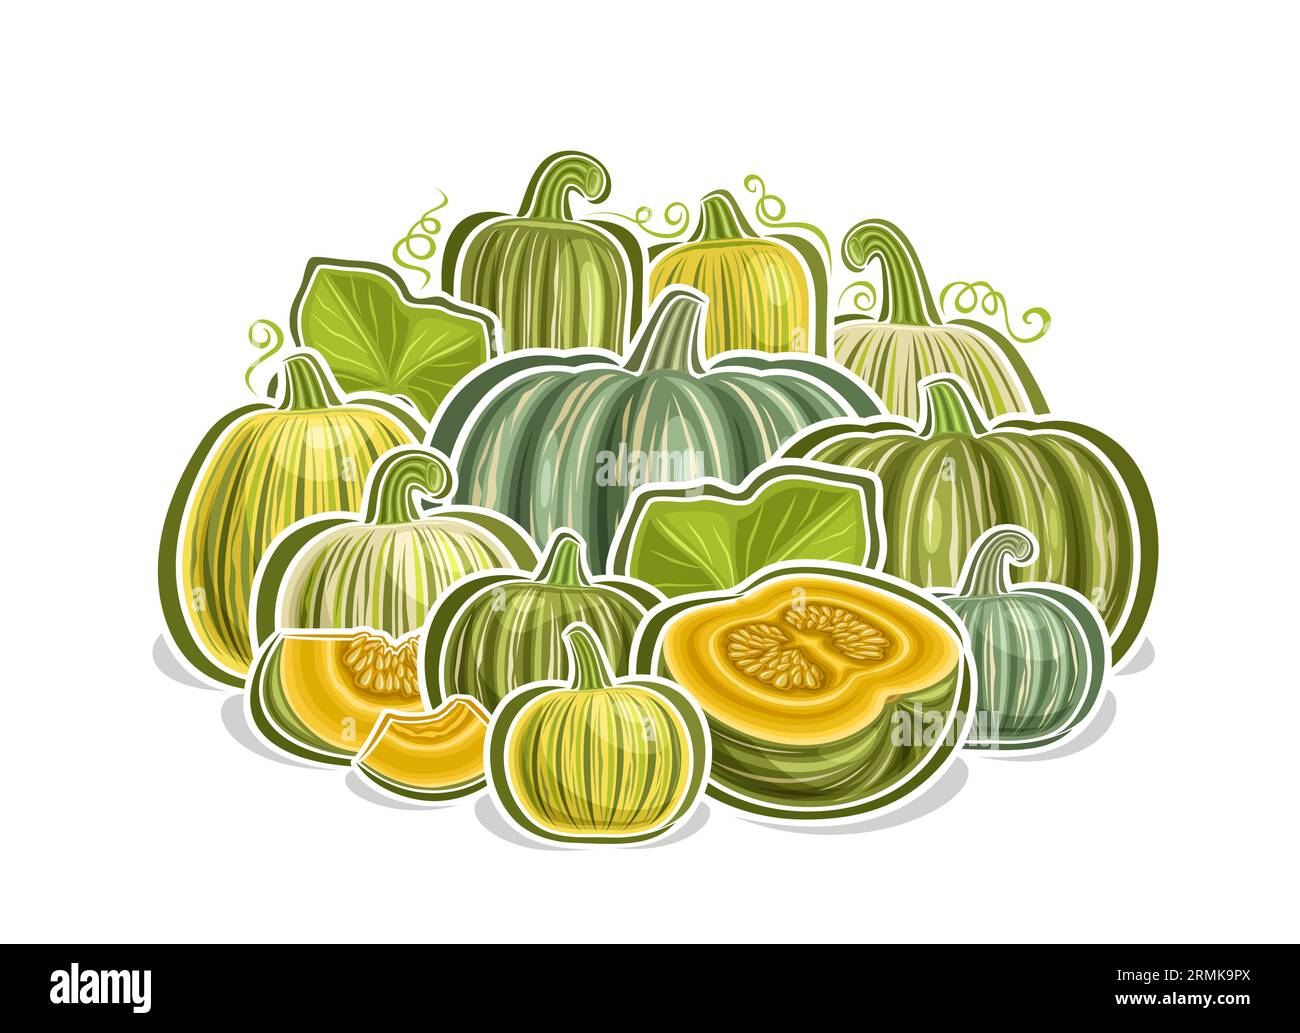 Logo vectoriel pour Kabocha, affiche horizontale décorative avec dessin animé composition végétarienne citrouille verte, impression végétalienne avec variété entière et coupée Illustration de Vecteur